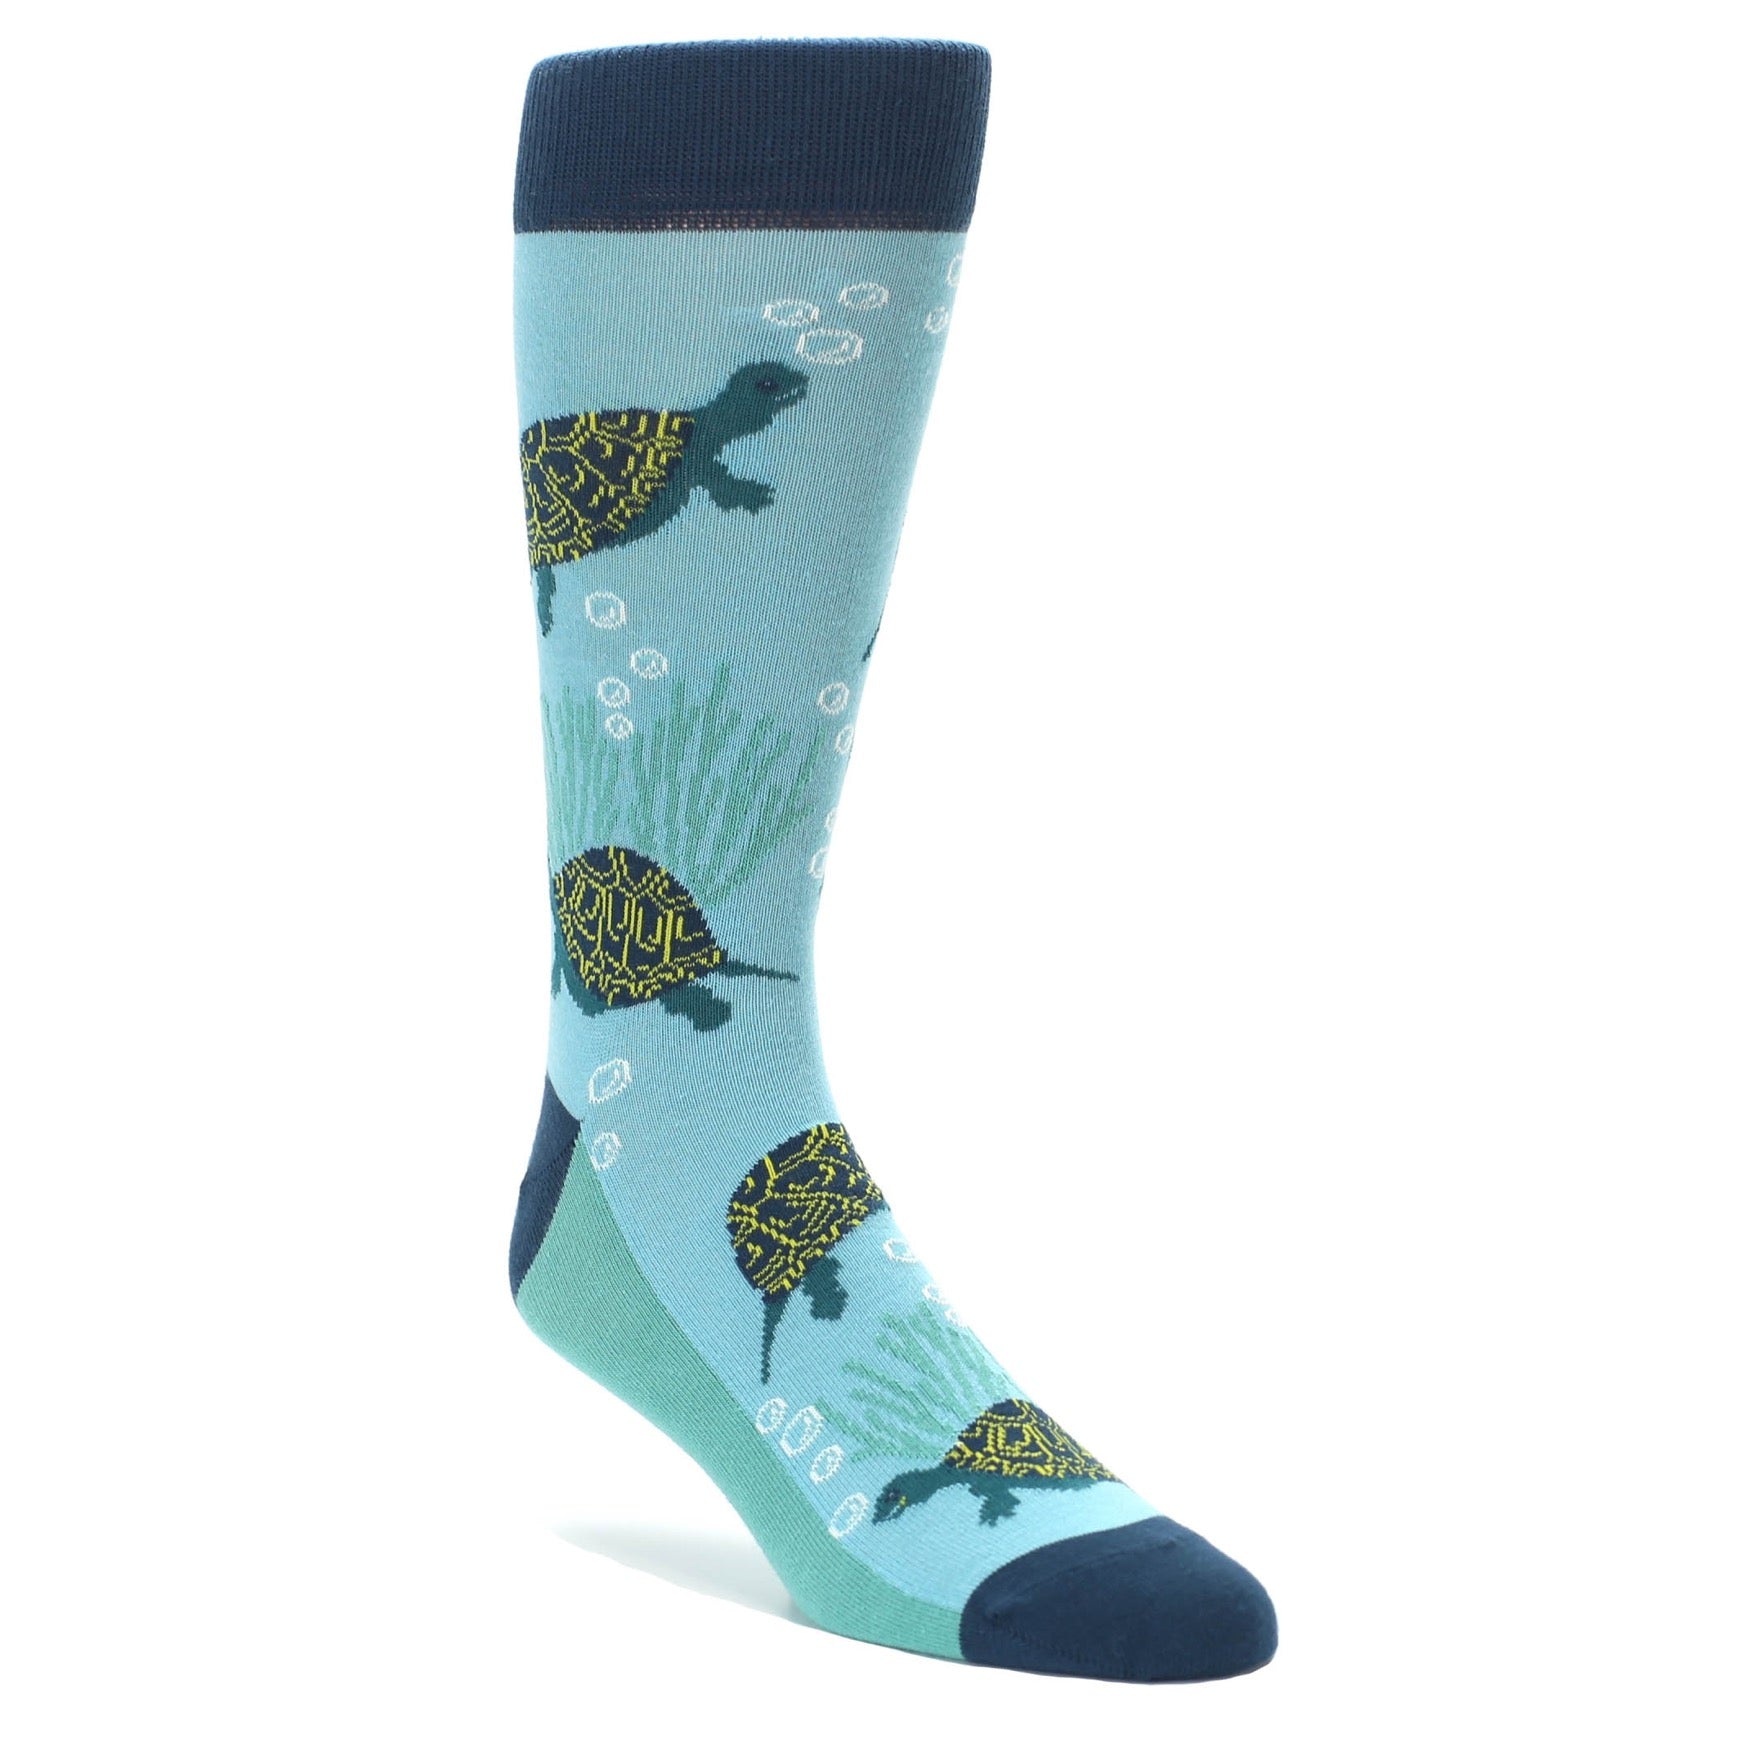 Men's Turtle Socks by Statement Sockwear